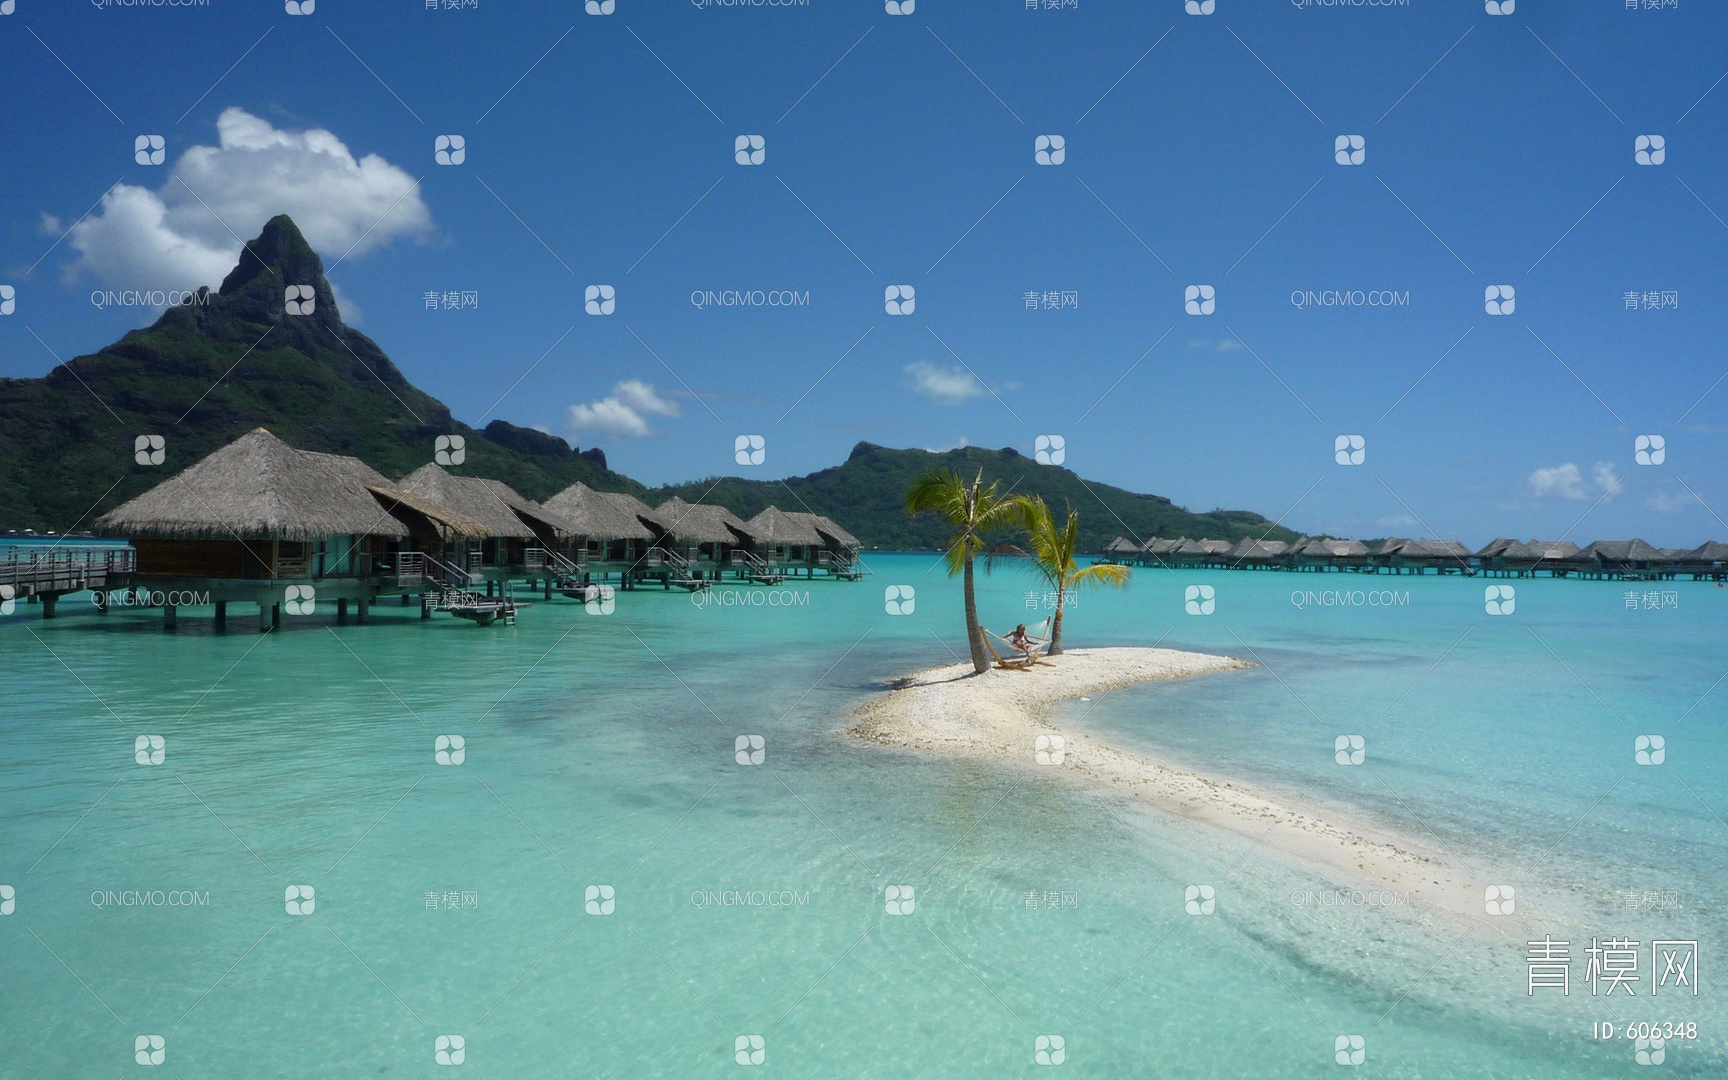 马尔代夫海上度假村的茅草屋图片-千叶网